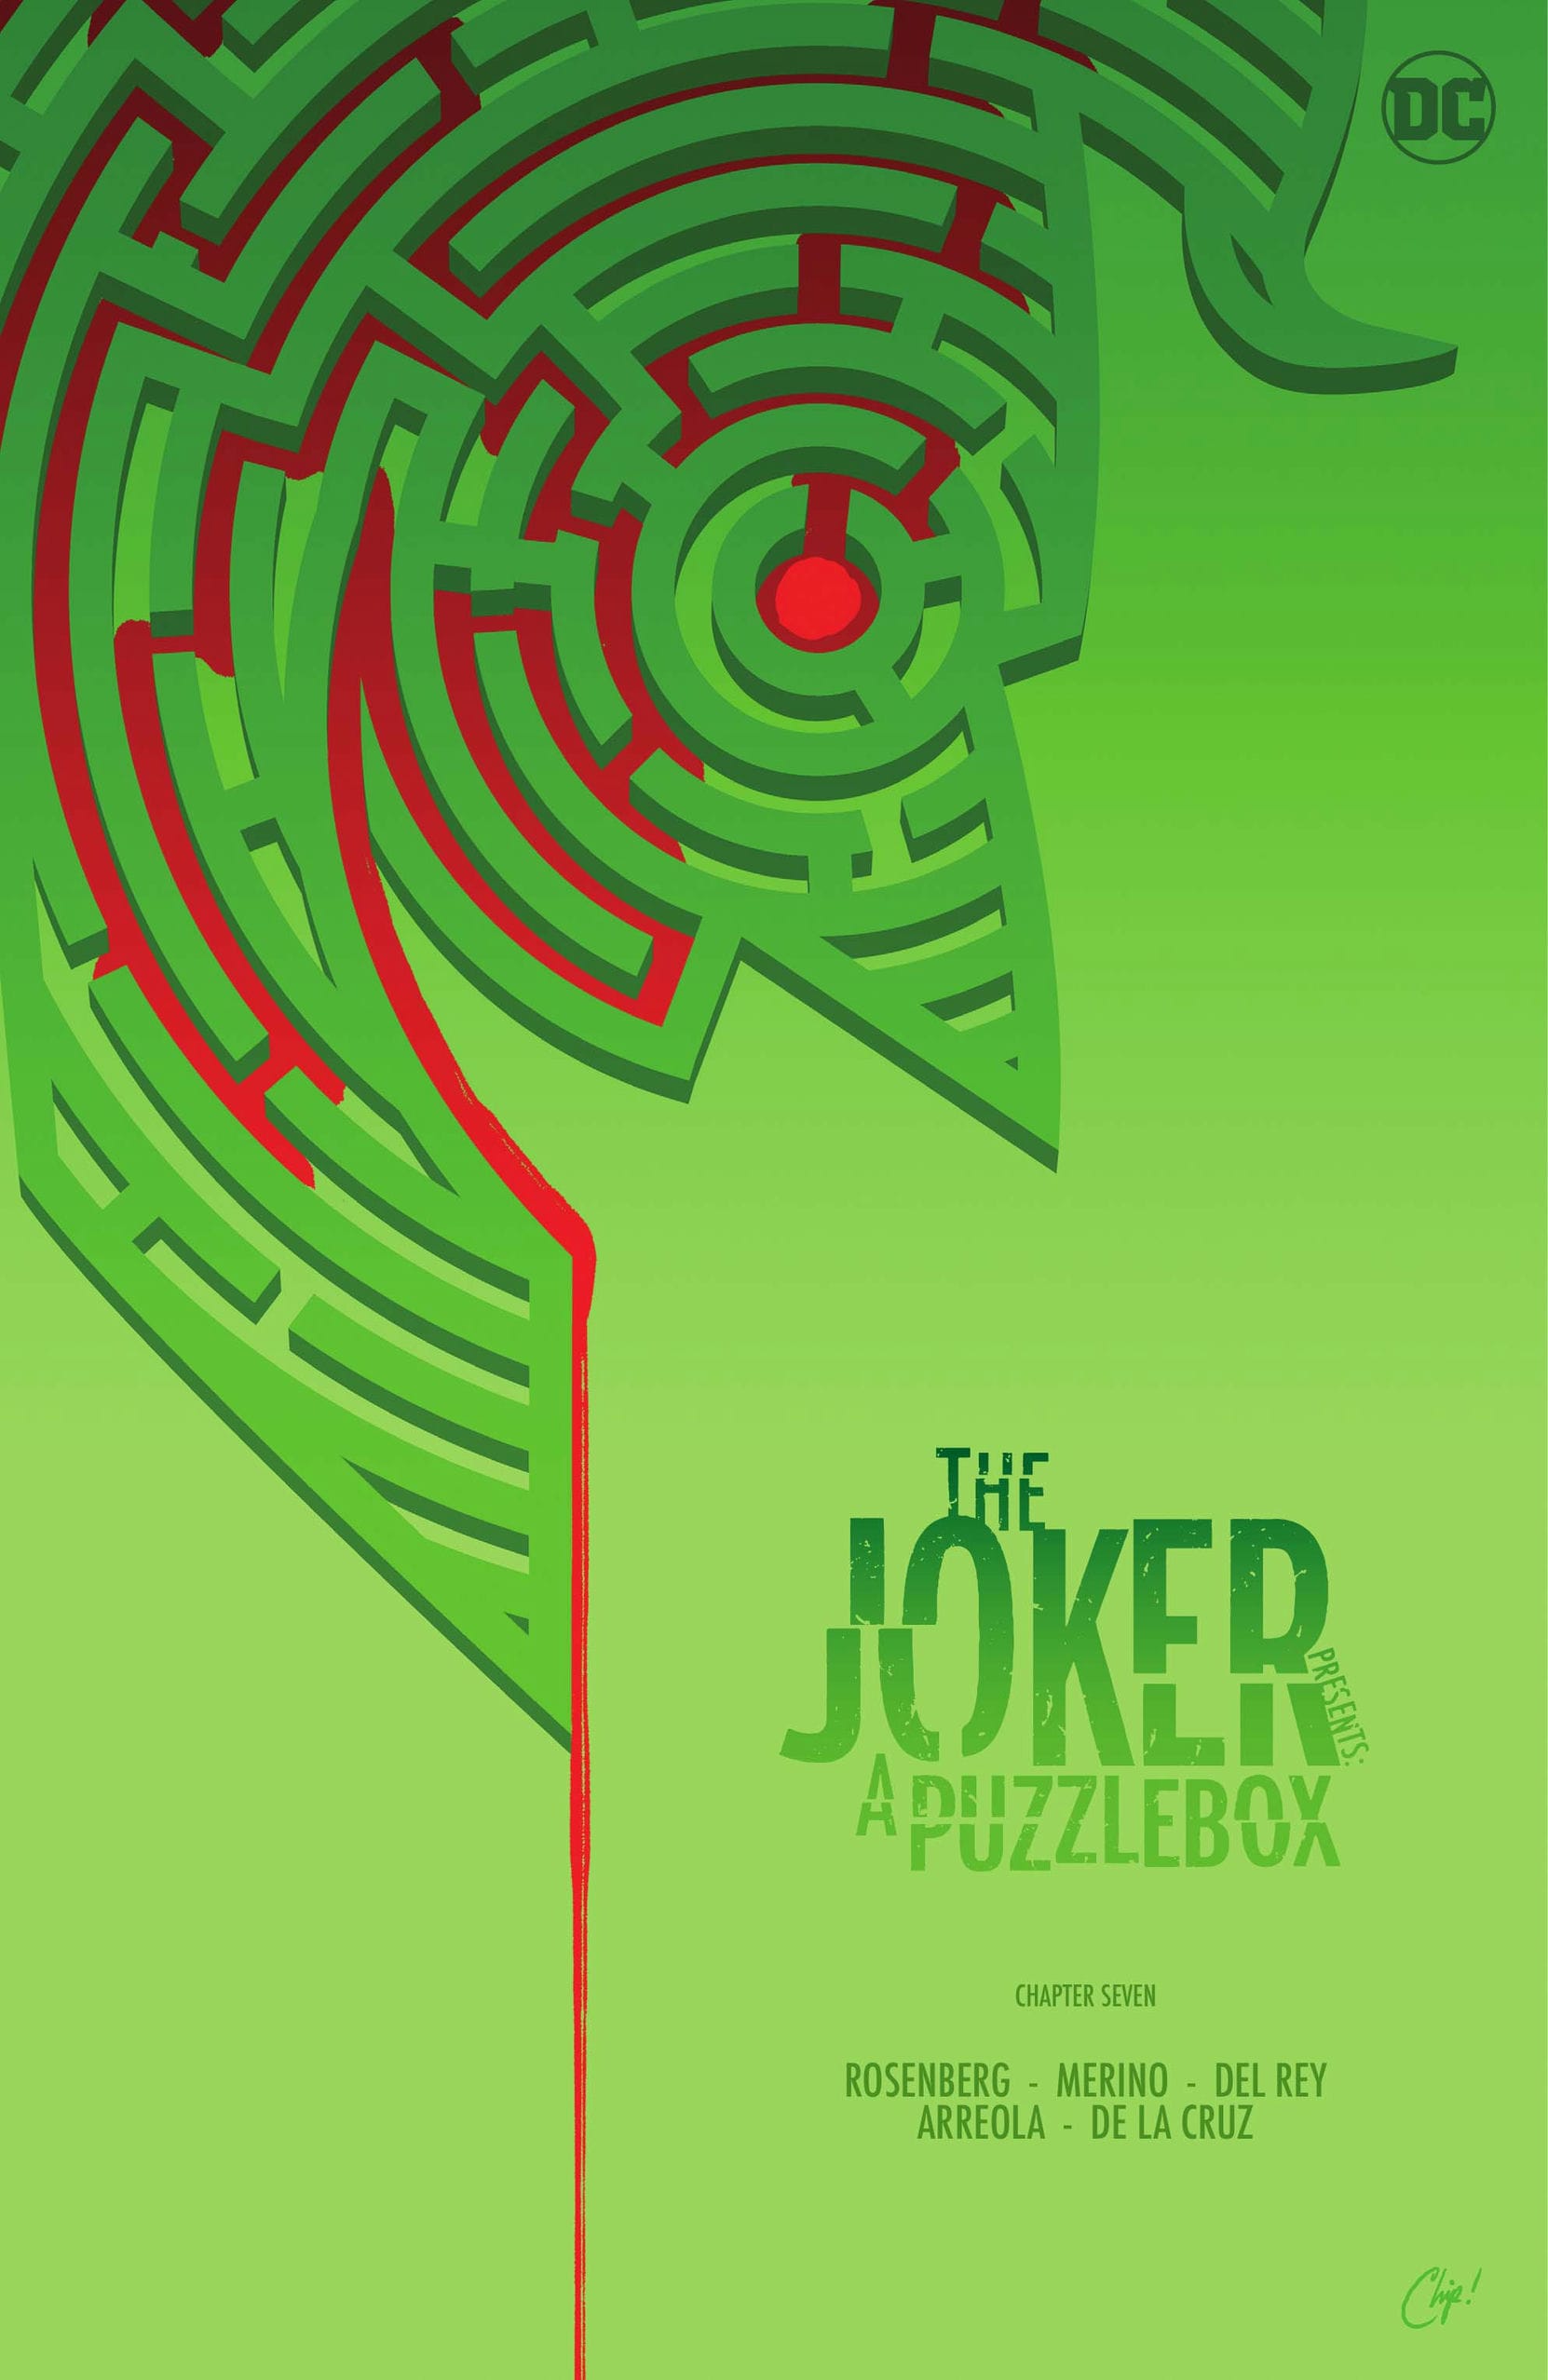 https://langgeek.net/wp-content/webpc-passthru.php?src=https://langgeek.net/wp-content/uploads/2023/01/The-Joker-Presents-A-Puzzlebox-Director_s-Cut-007-000.jpg&nocache=1